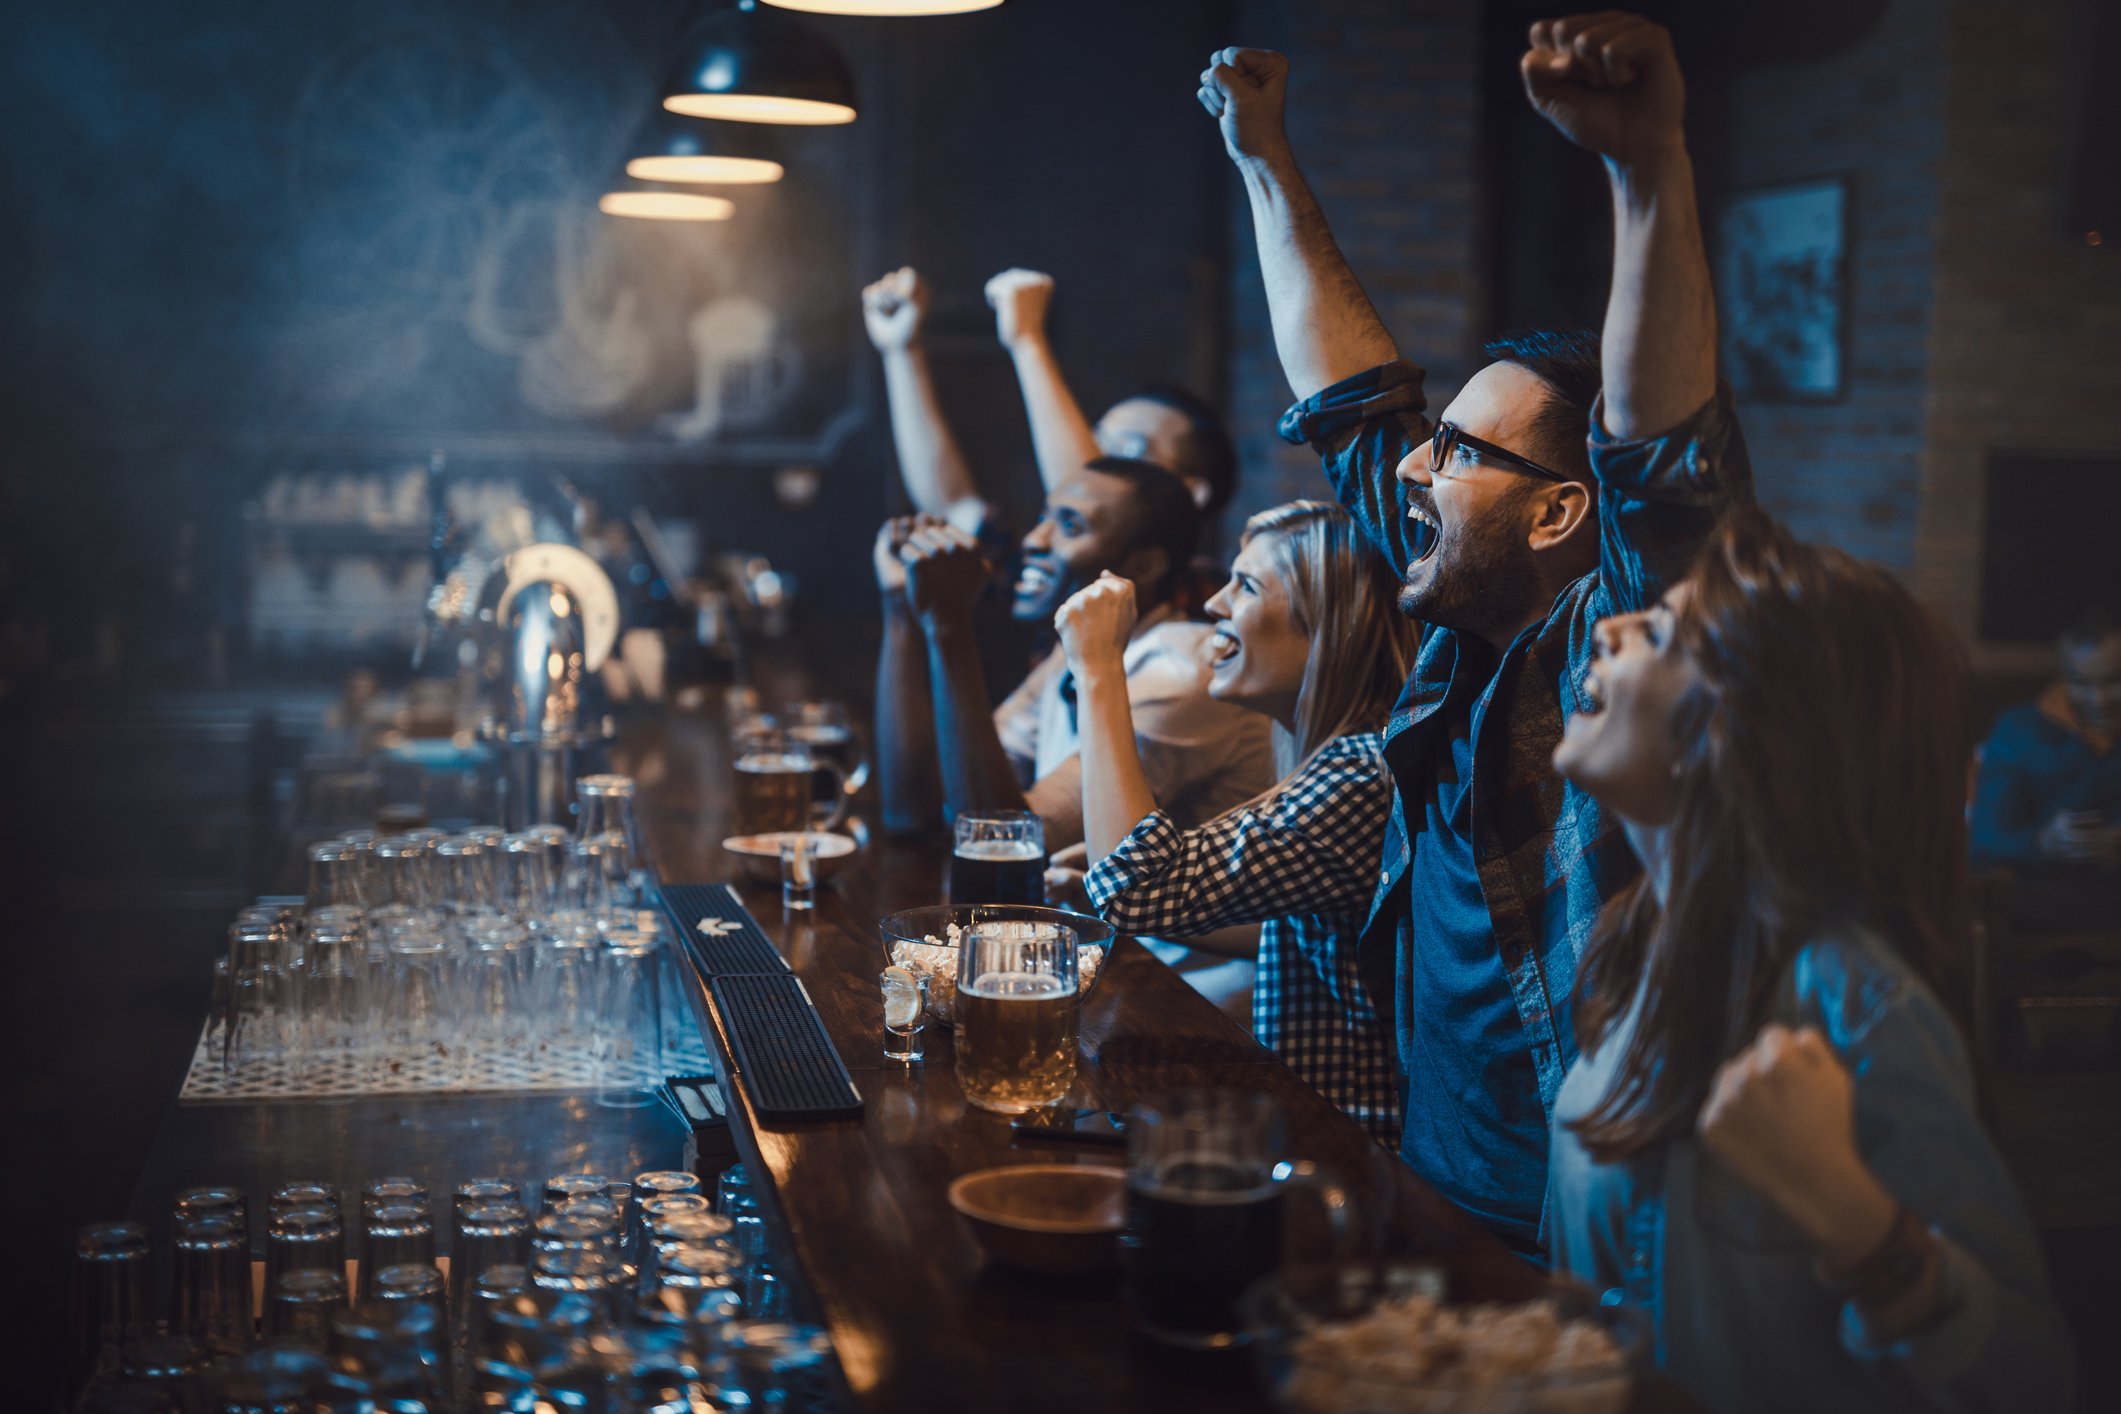 Friends celebrate at a sports bar